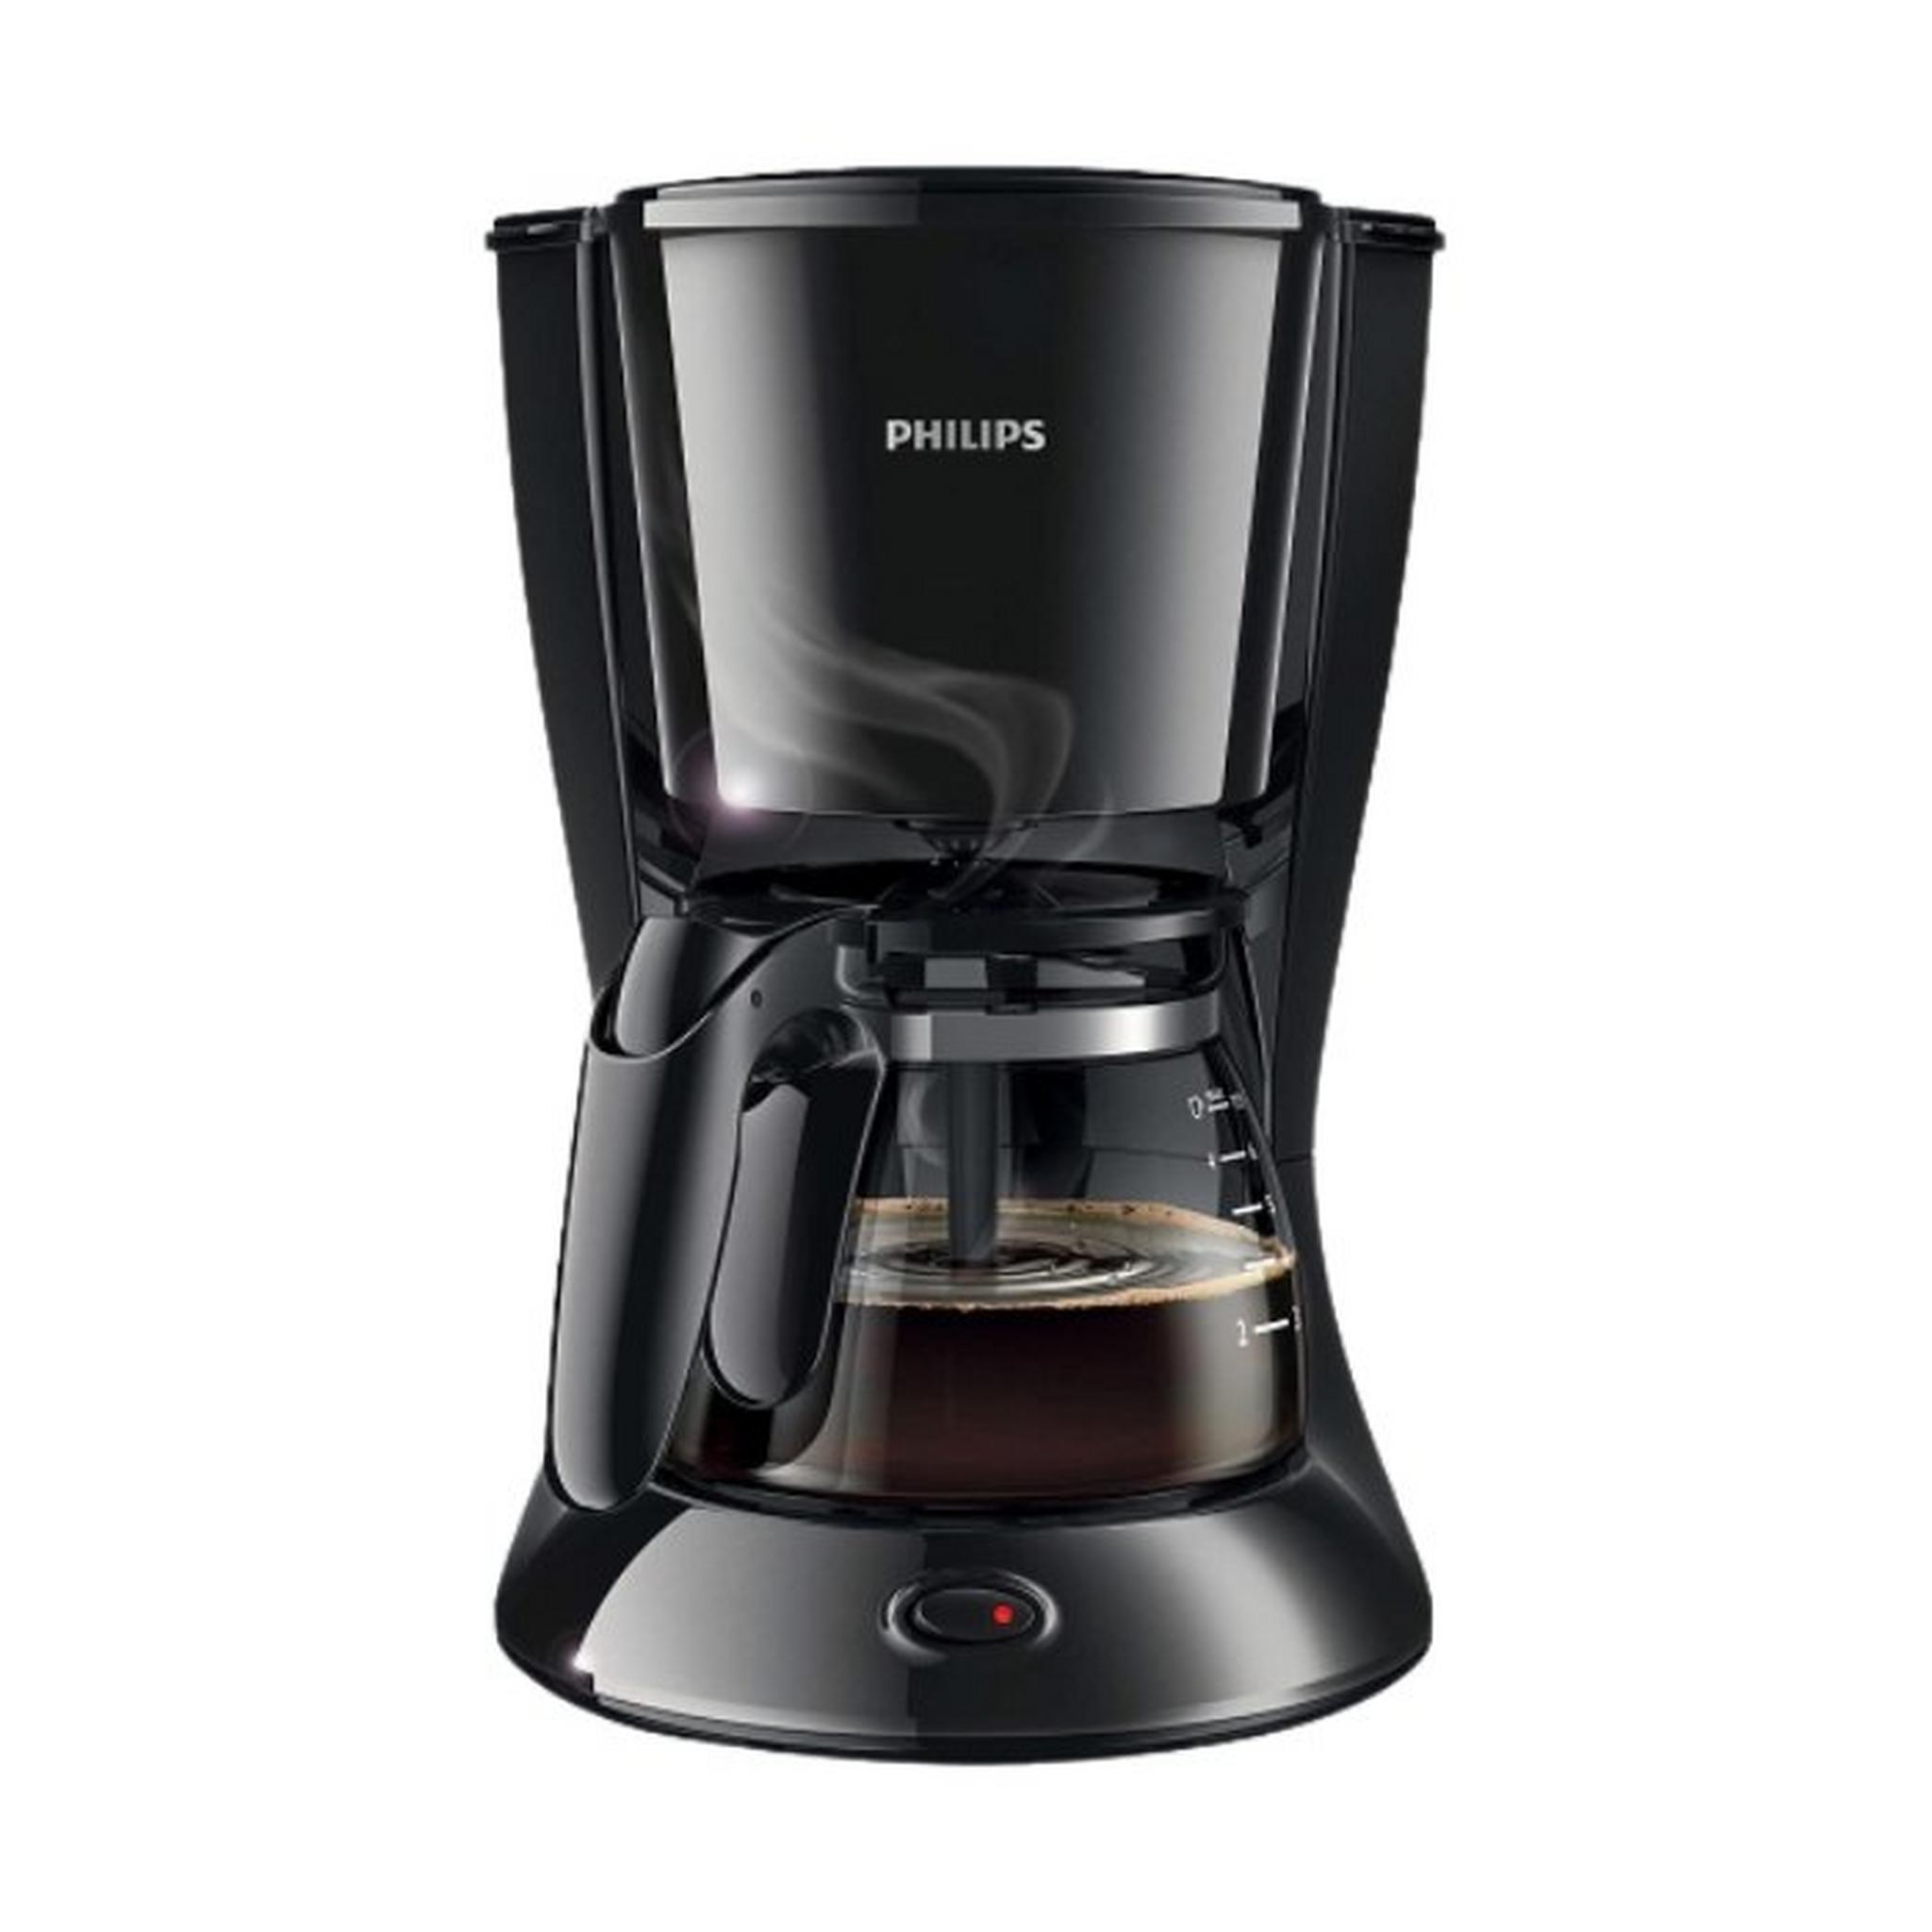 ماكينة تحضير القهوة من فيليبس، قدرة 750 وات، سعة 0.6 لتر، HD7432/20 – أسود